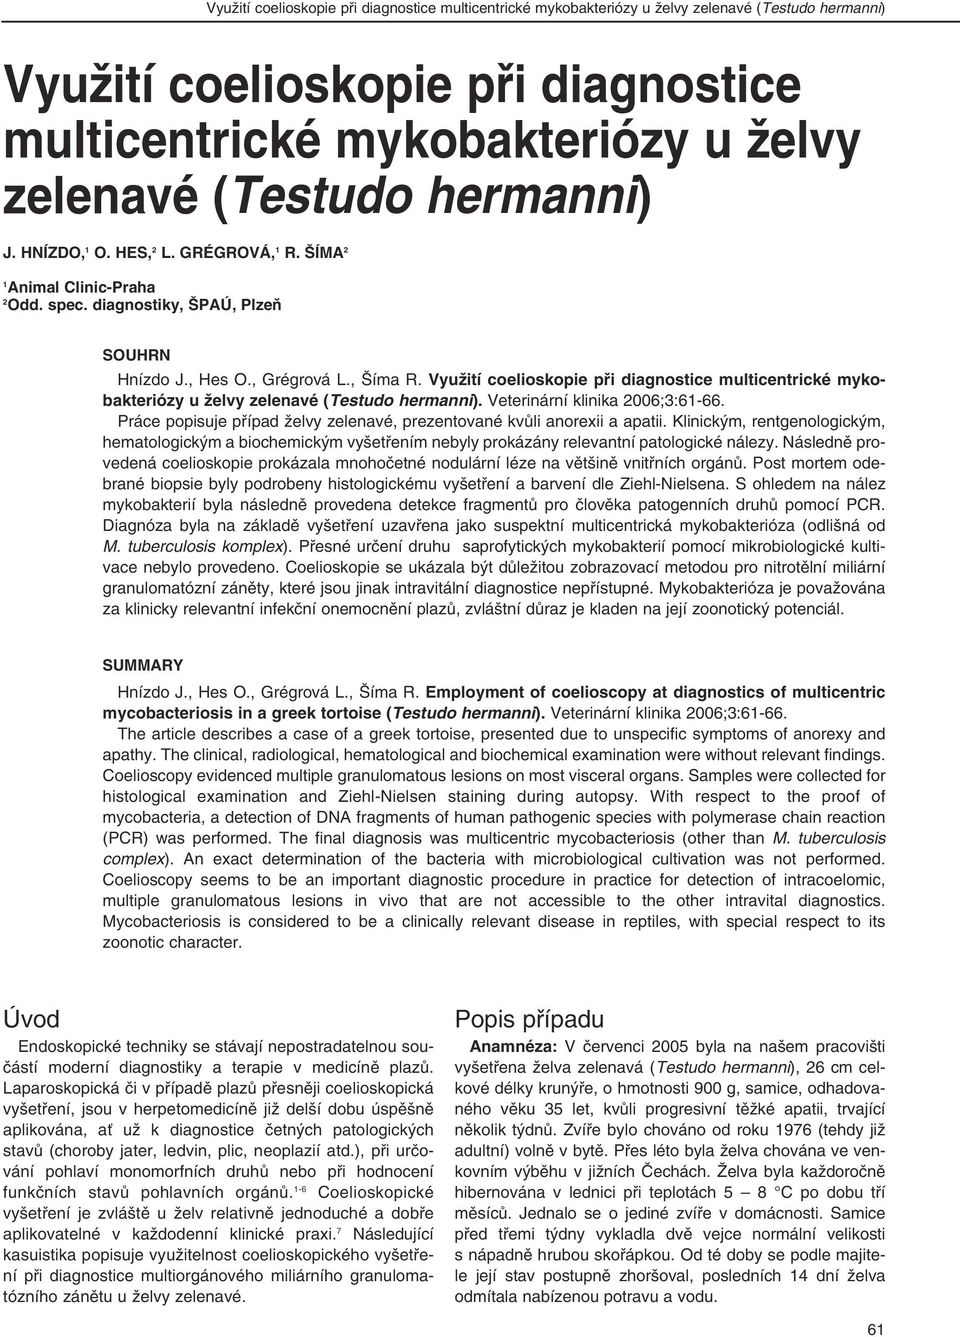 Využití coelioskopie při diagnostice multicentrické mykobakteriózy u želvy zelenavé (Testudo hermanni). Veterinární klinika 2006;3:61-66.